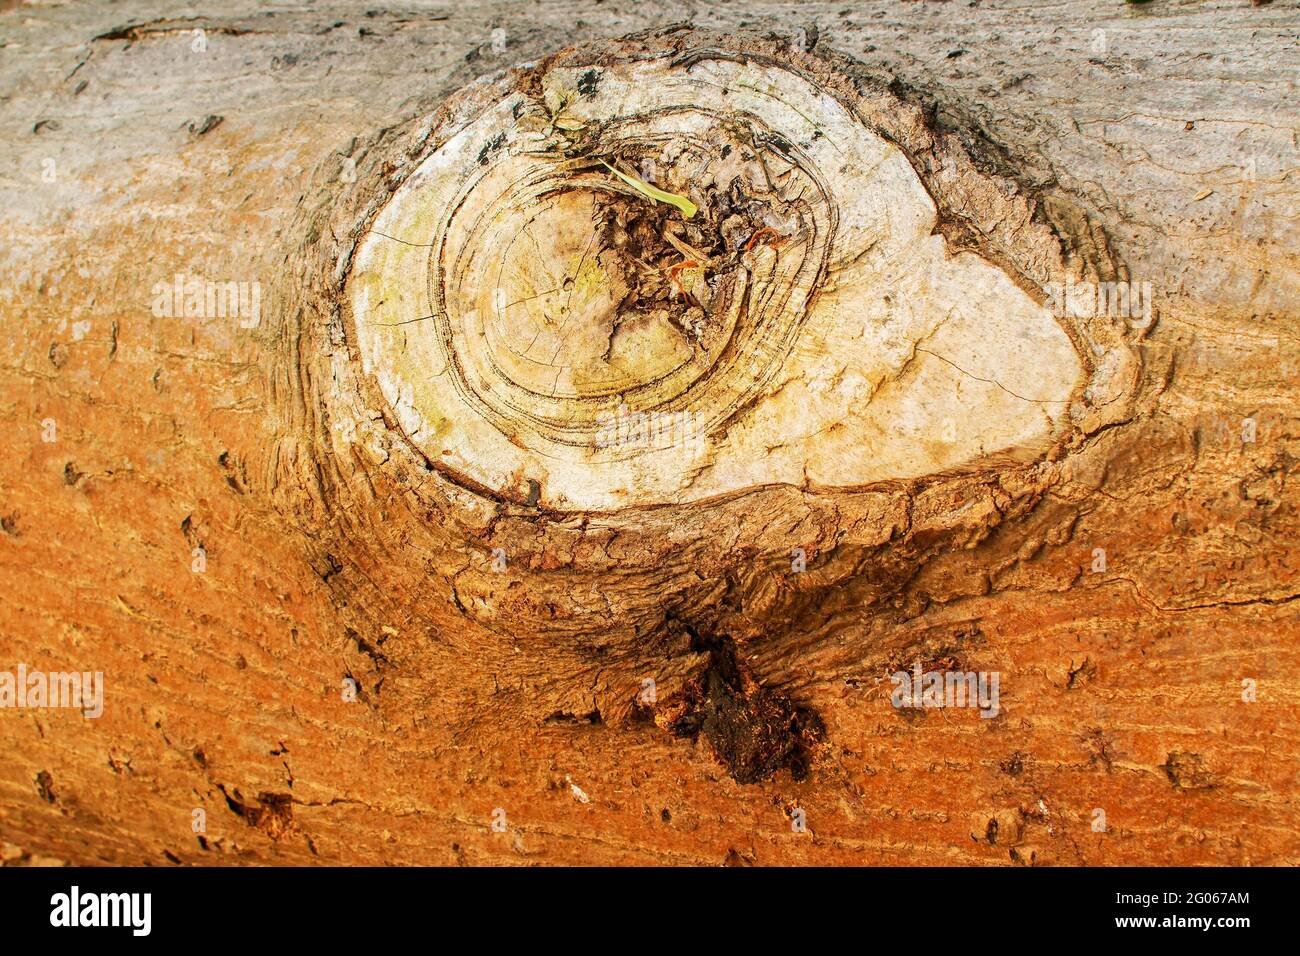 bois en rondins, gros plan d'un arbre coupé dans une jungle, image de la nature Banque D'Images